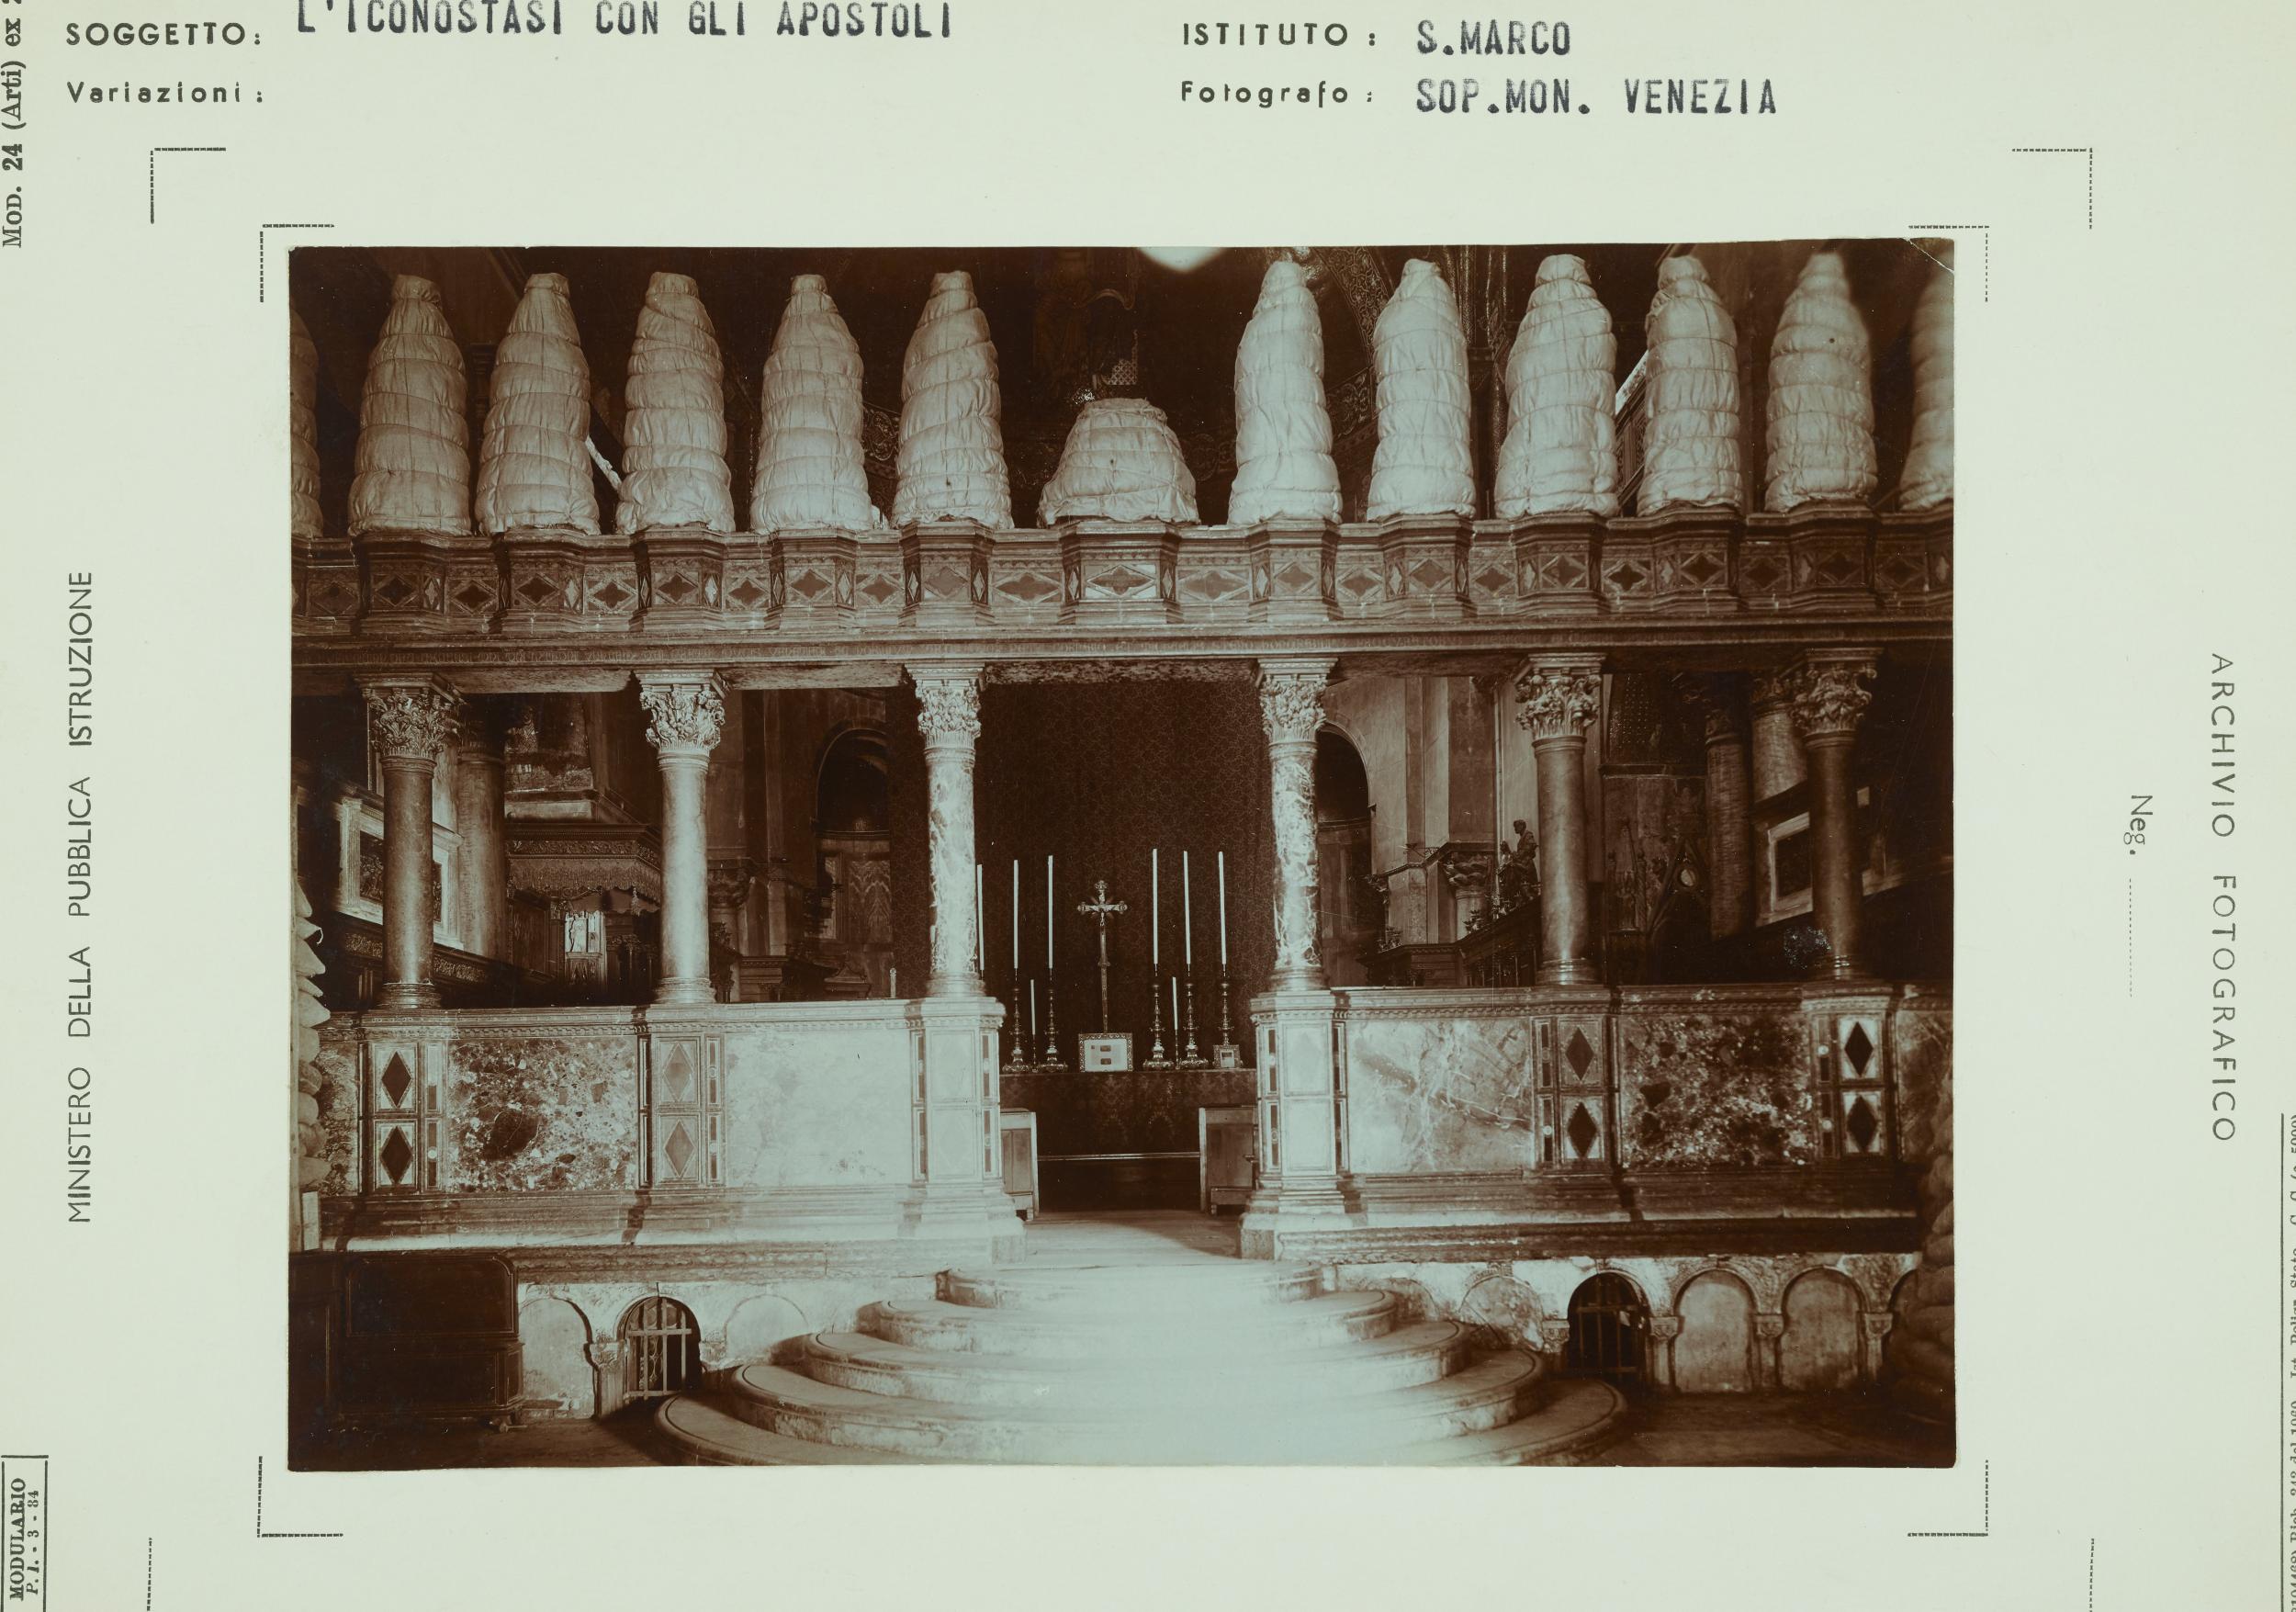 Fotografo non identificato, Venezia - Basilica di S. Marco, interno, protezione anti bellica, aristotipo, MPI153222